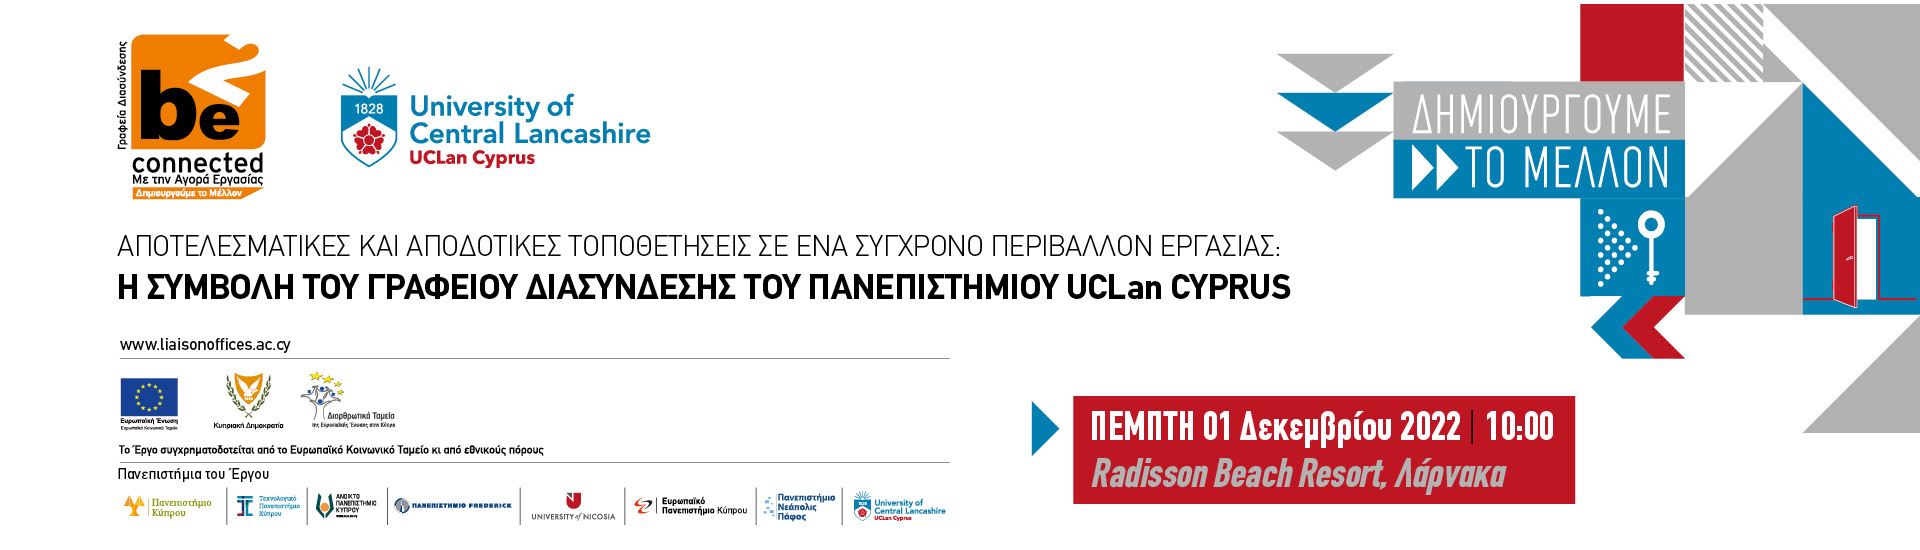 ΓΔ του Πανεπιστημίου UCLan Cyprus, Γραφεία Διασύνδεσης Πανεπιστημίων